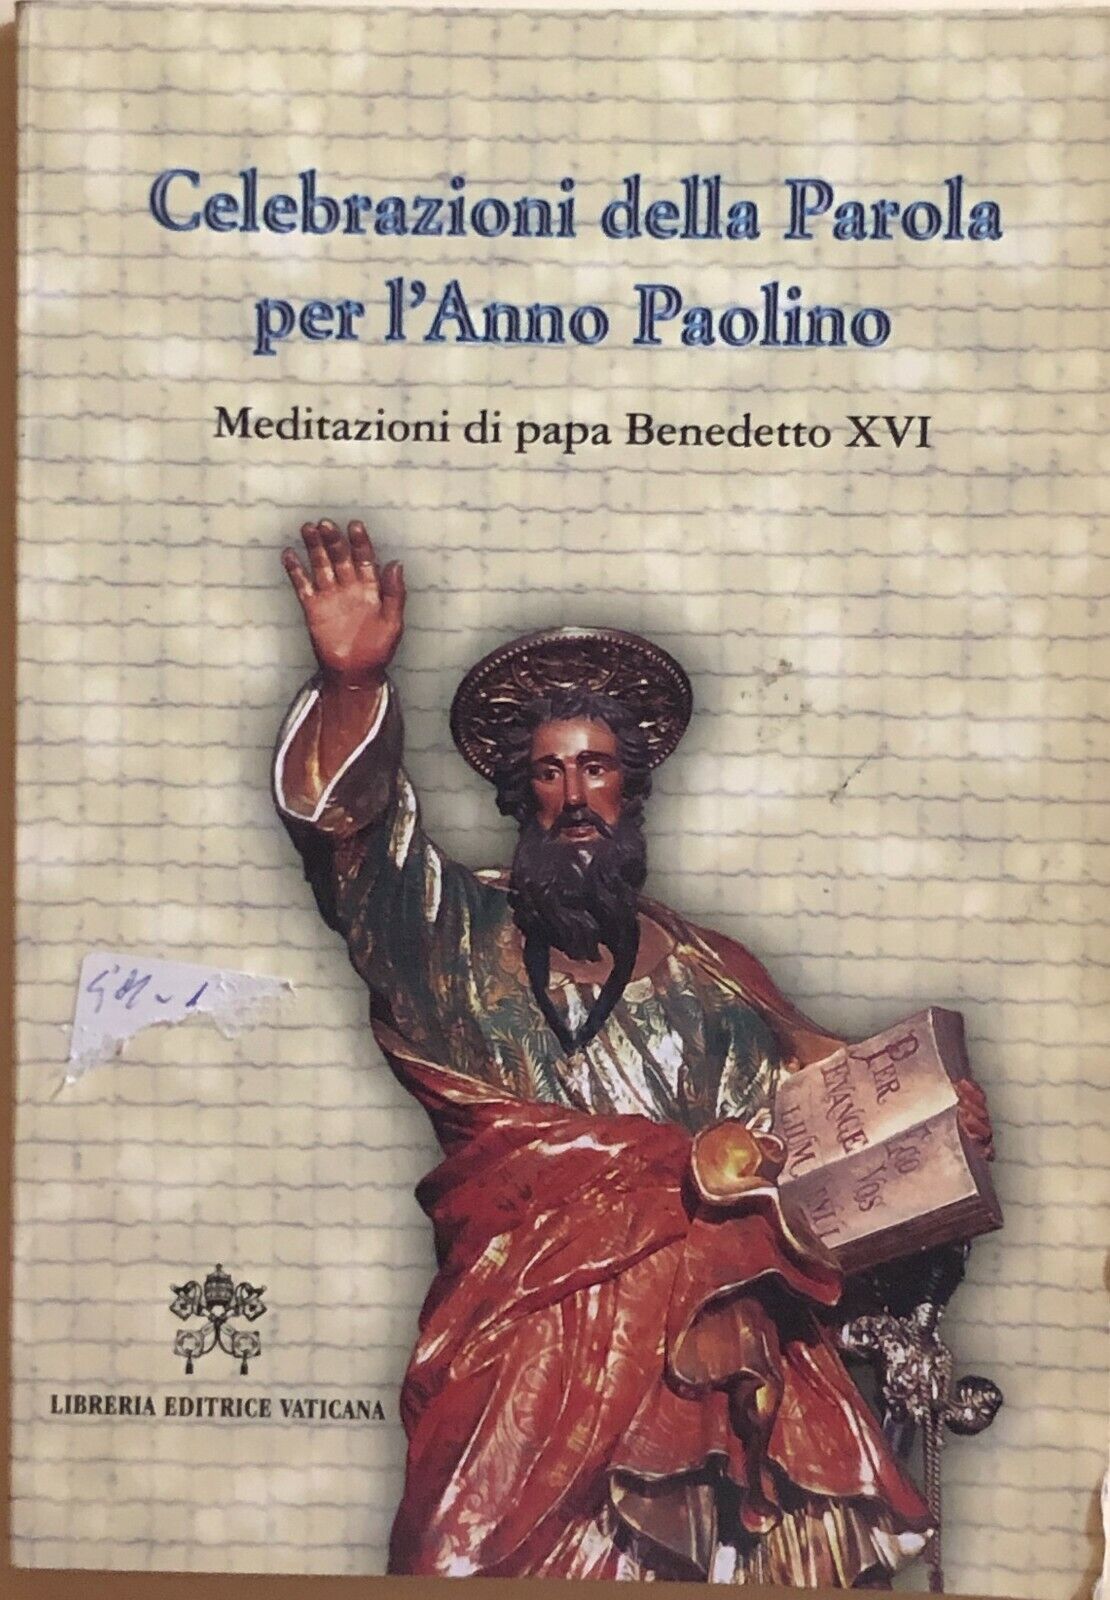 Celebrazioni della Parola per L'Anno Paolino, Meditazioni di Benedetto XVI, 2008